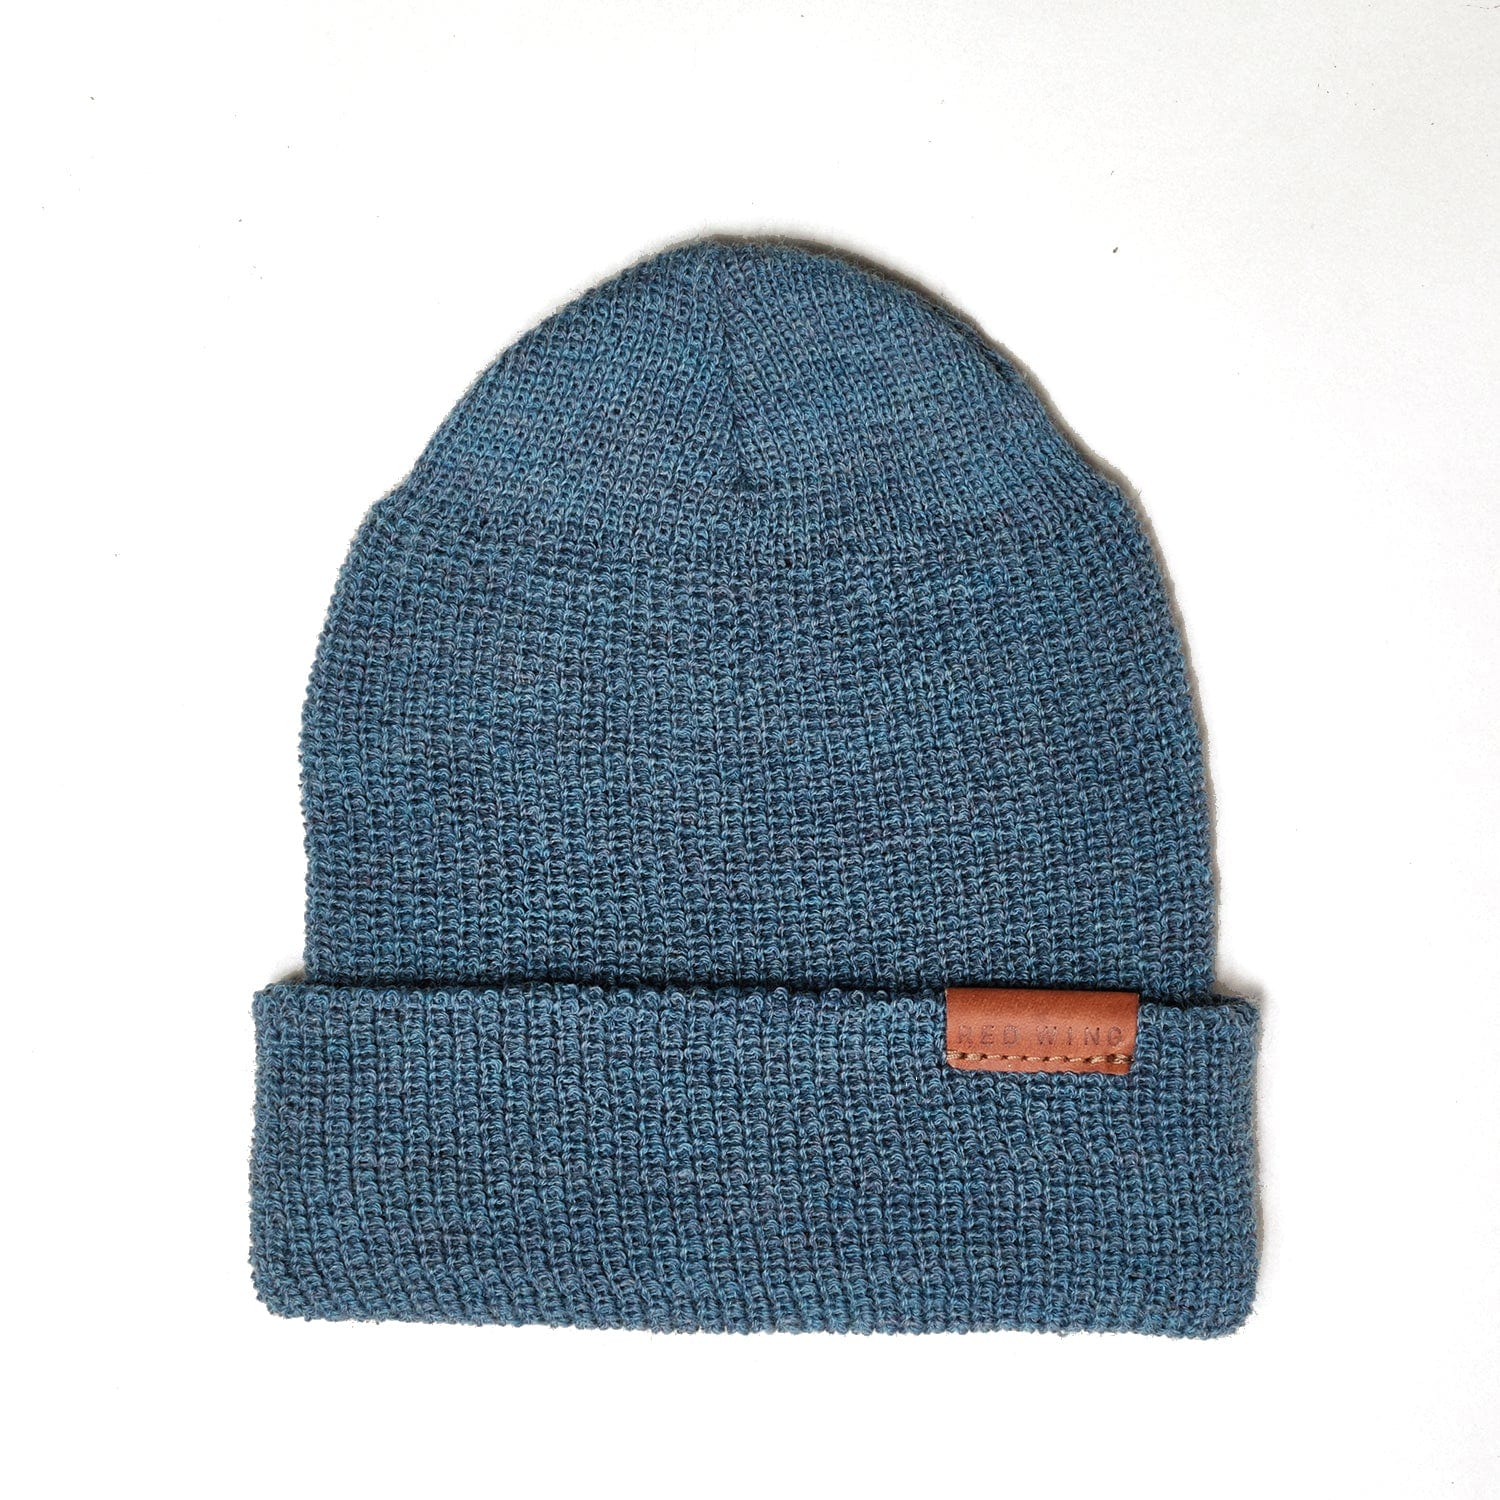 Merino Wool Knit Hat